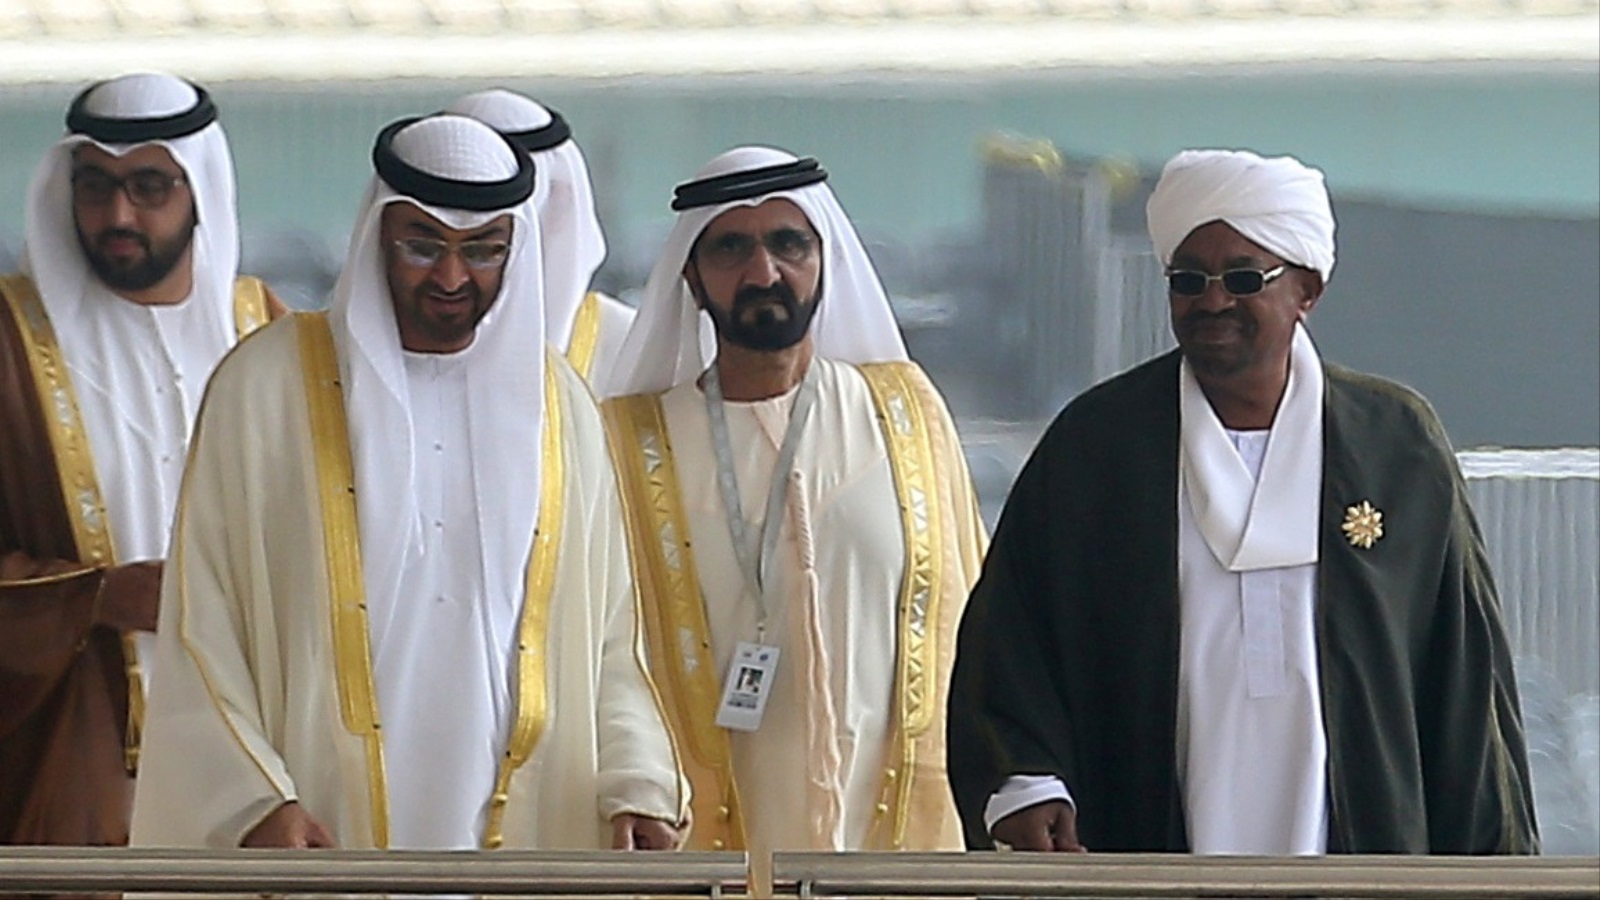 ما يحسب للدبلوماسية السودانية من نجاح هو استطاعتها المحافظة على علاقتها الطيبة مع قطر في الوقت الذي وطدت فيه علاقتها مع السعودية والإمارات